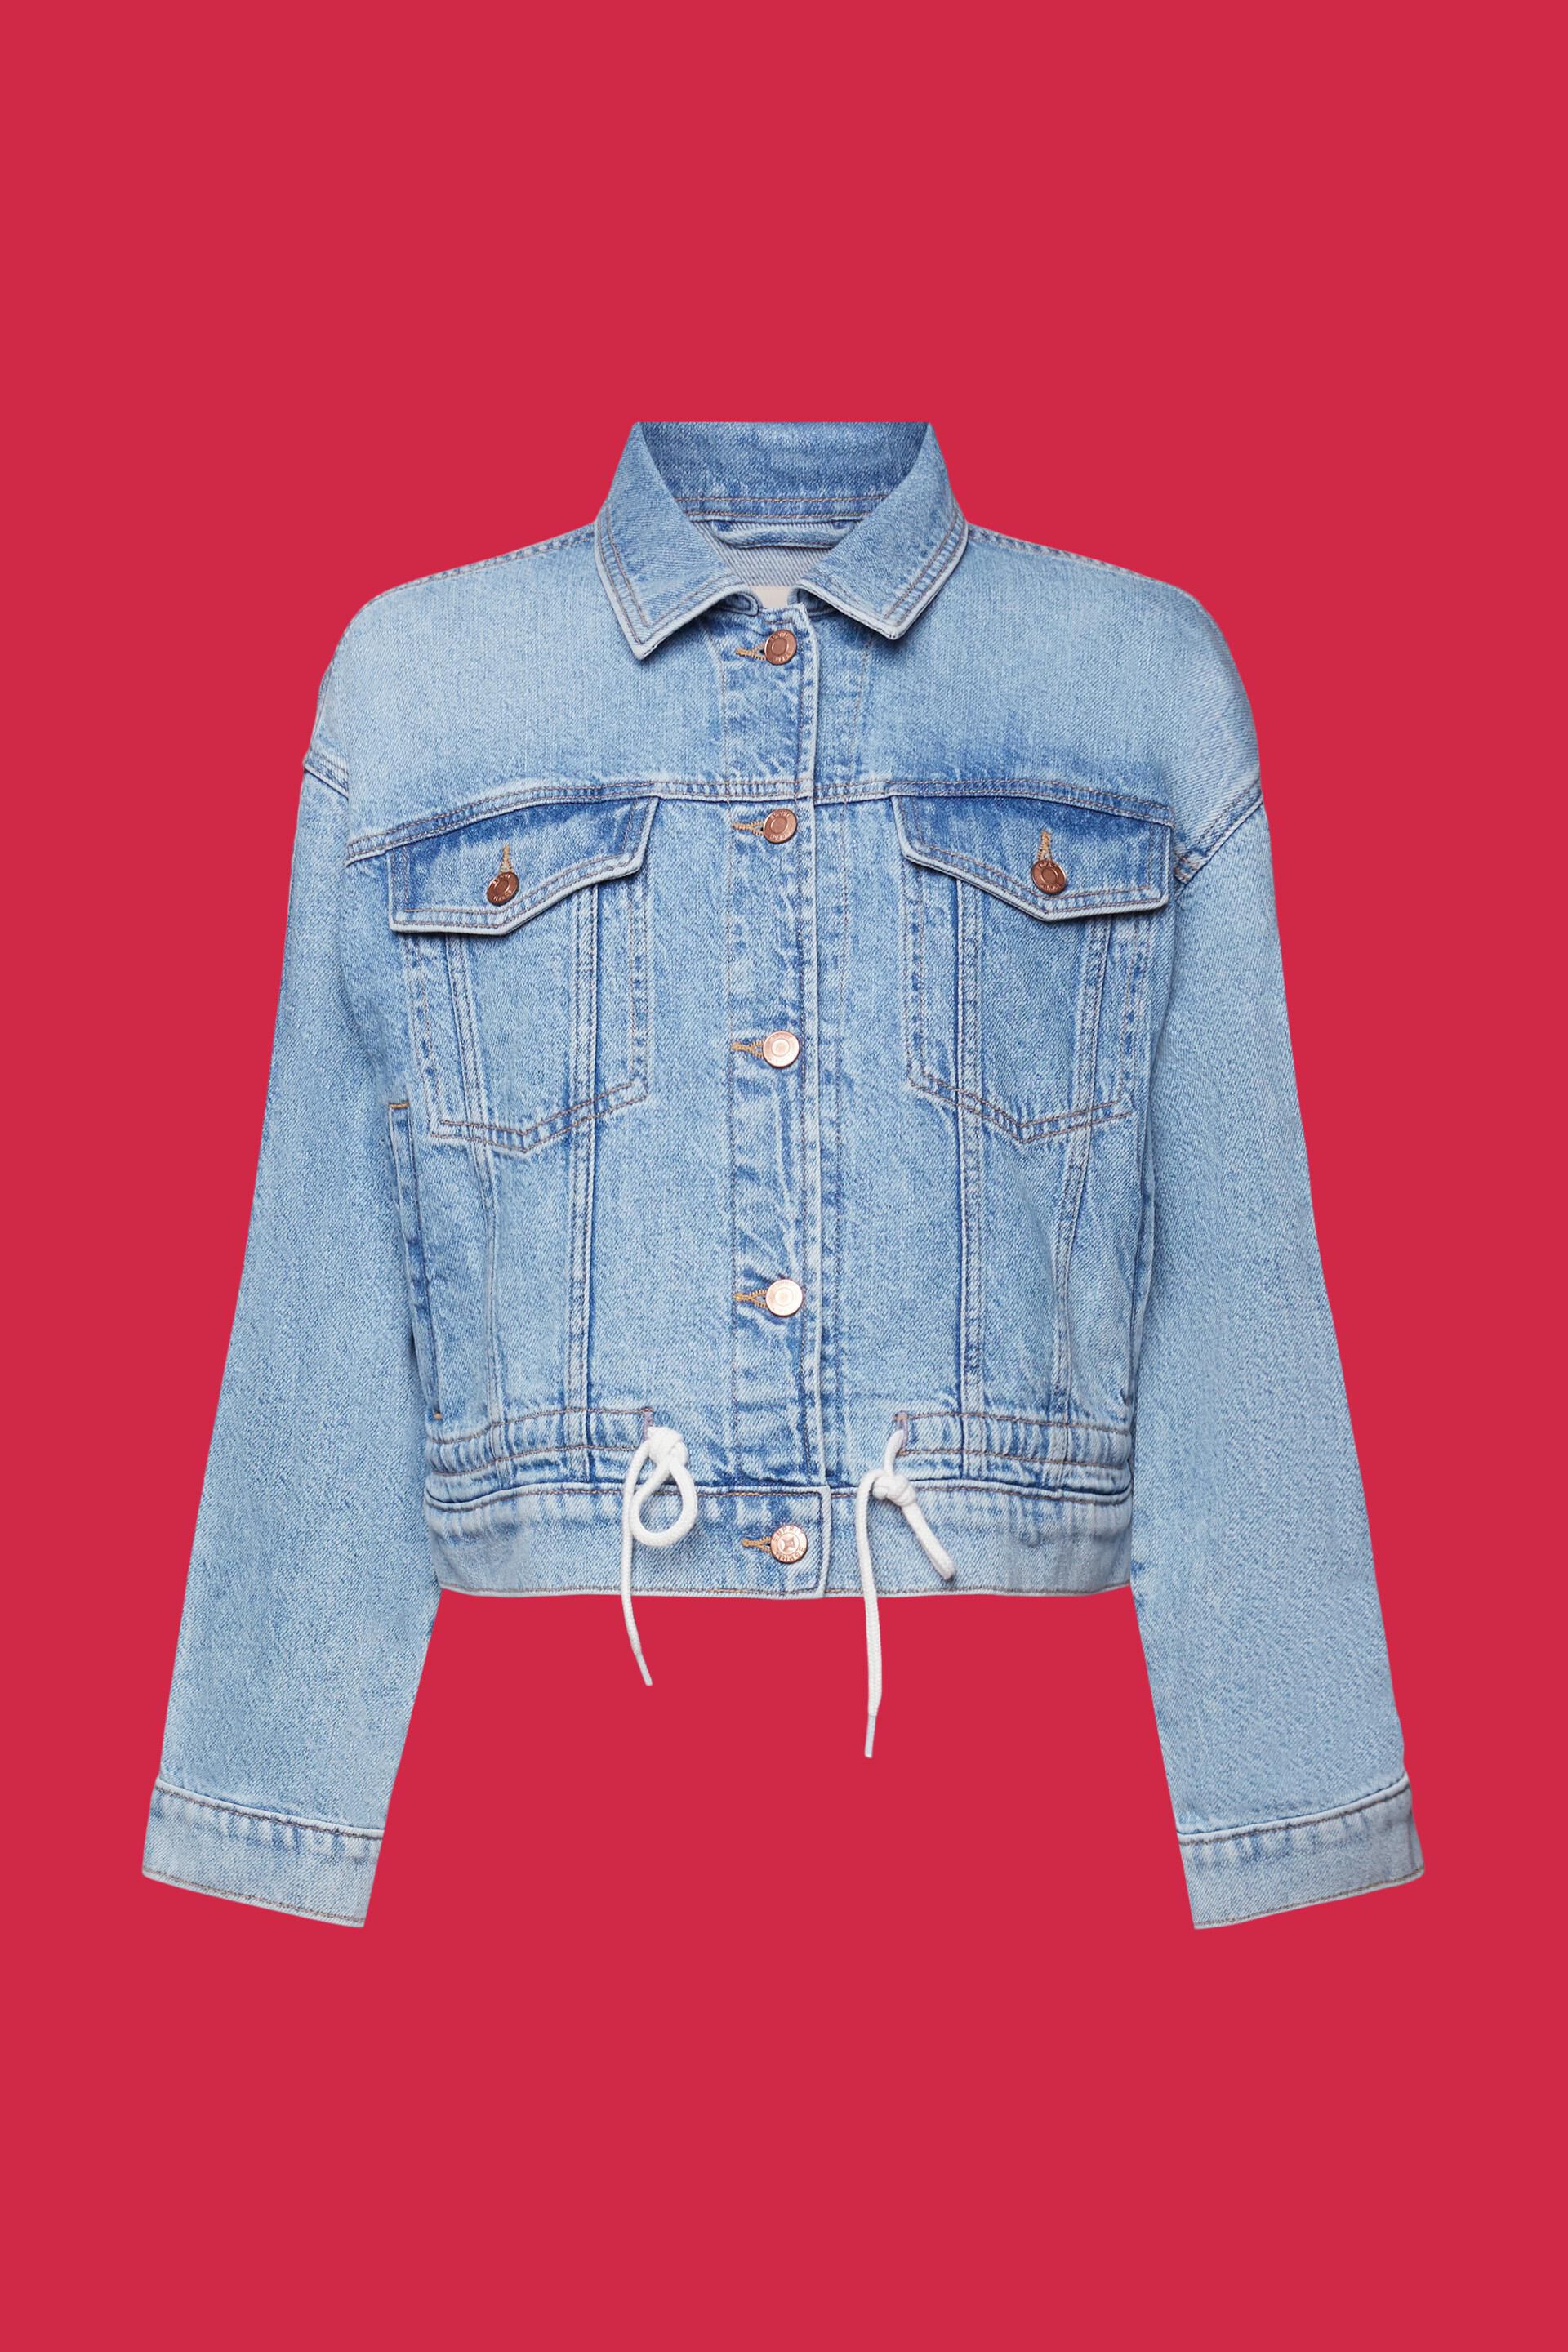 Oversized Jeansjacke in leichter Waschung in unserem Online Shop - ESPRIT